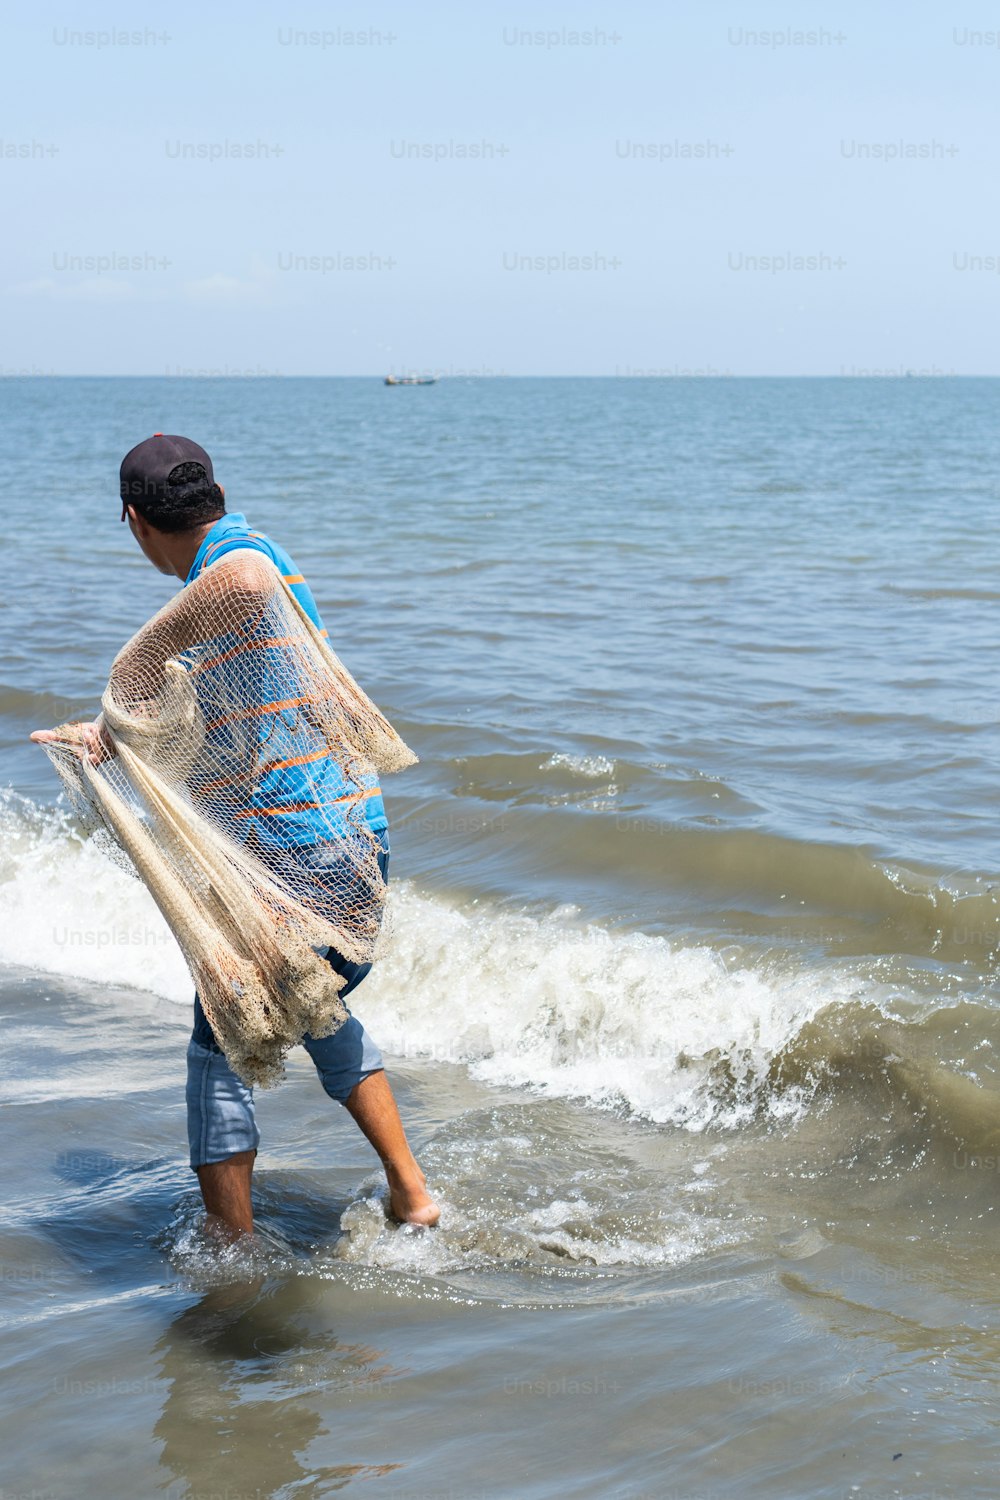 Pescador latino lançando uma rede no mar